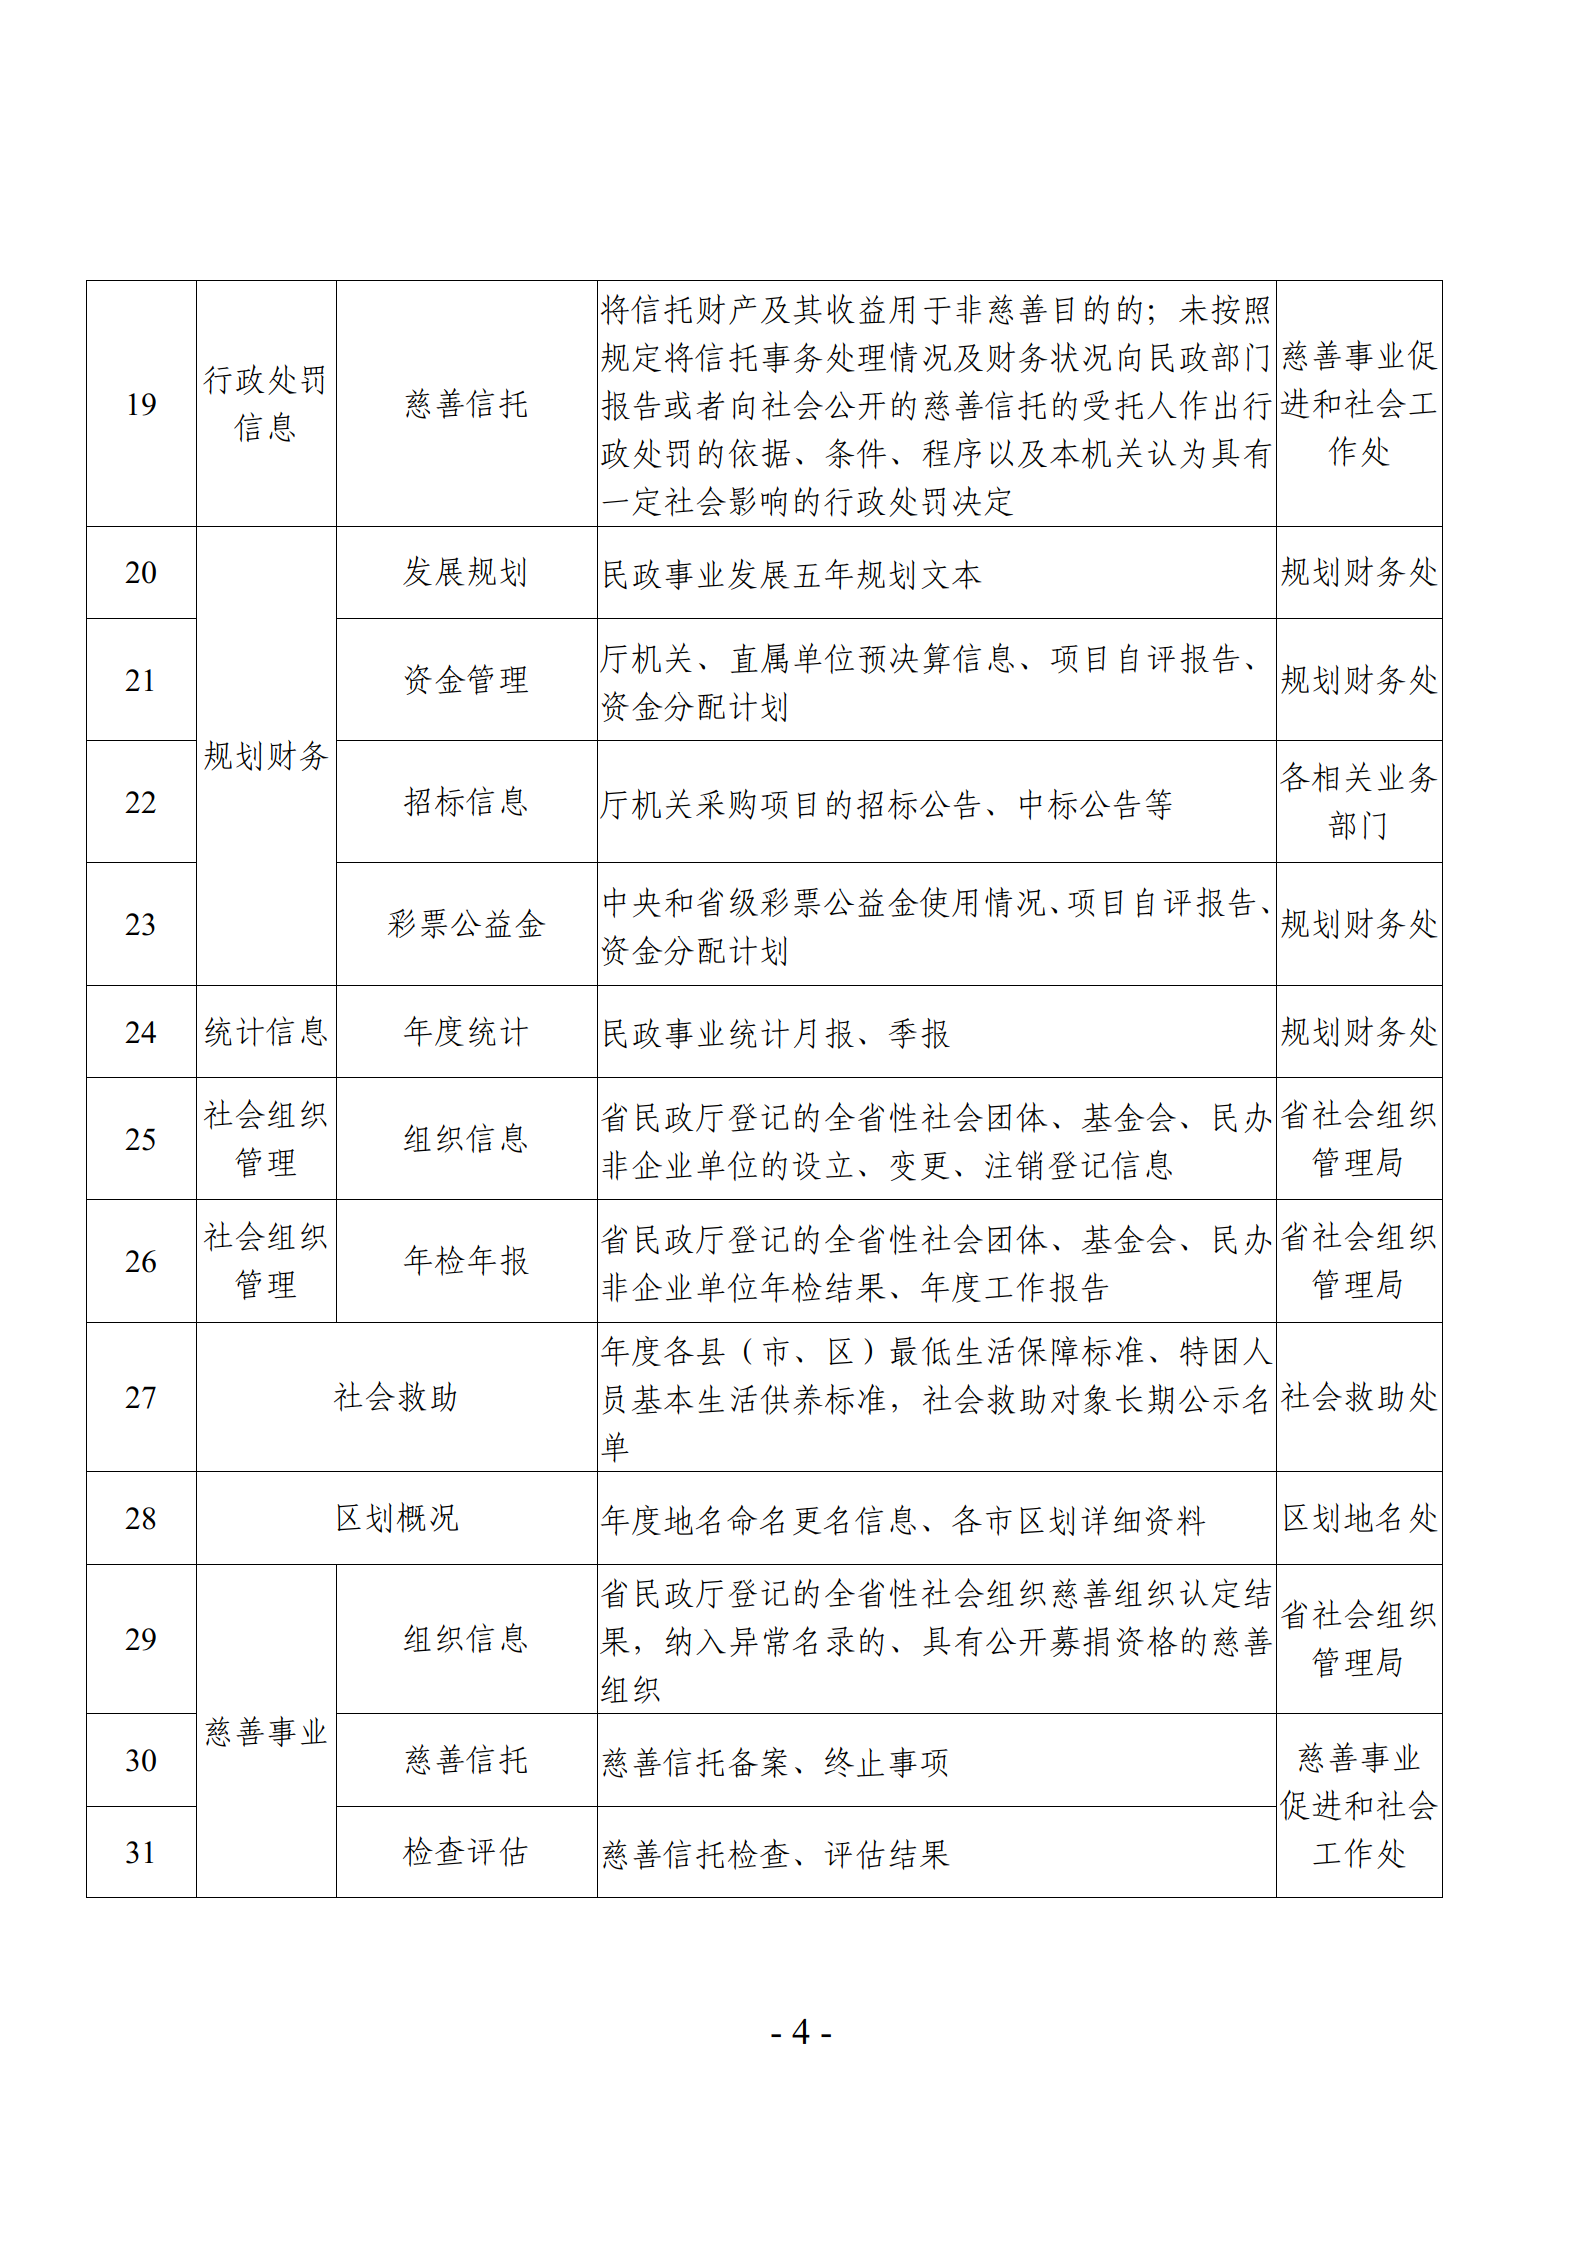 关于发布《广东省民政厅主动公开基本目录》的公告_07.png